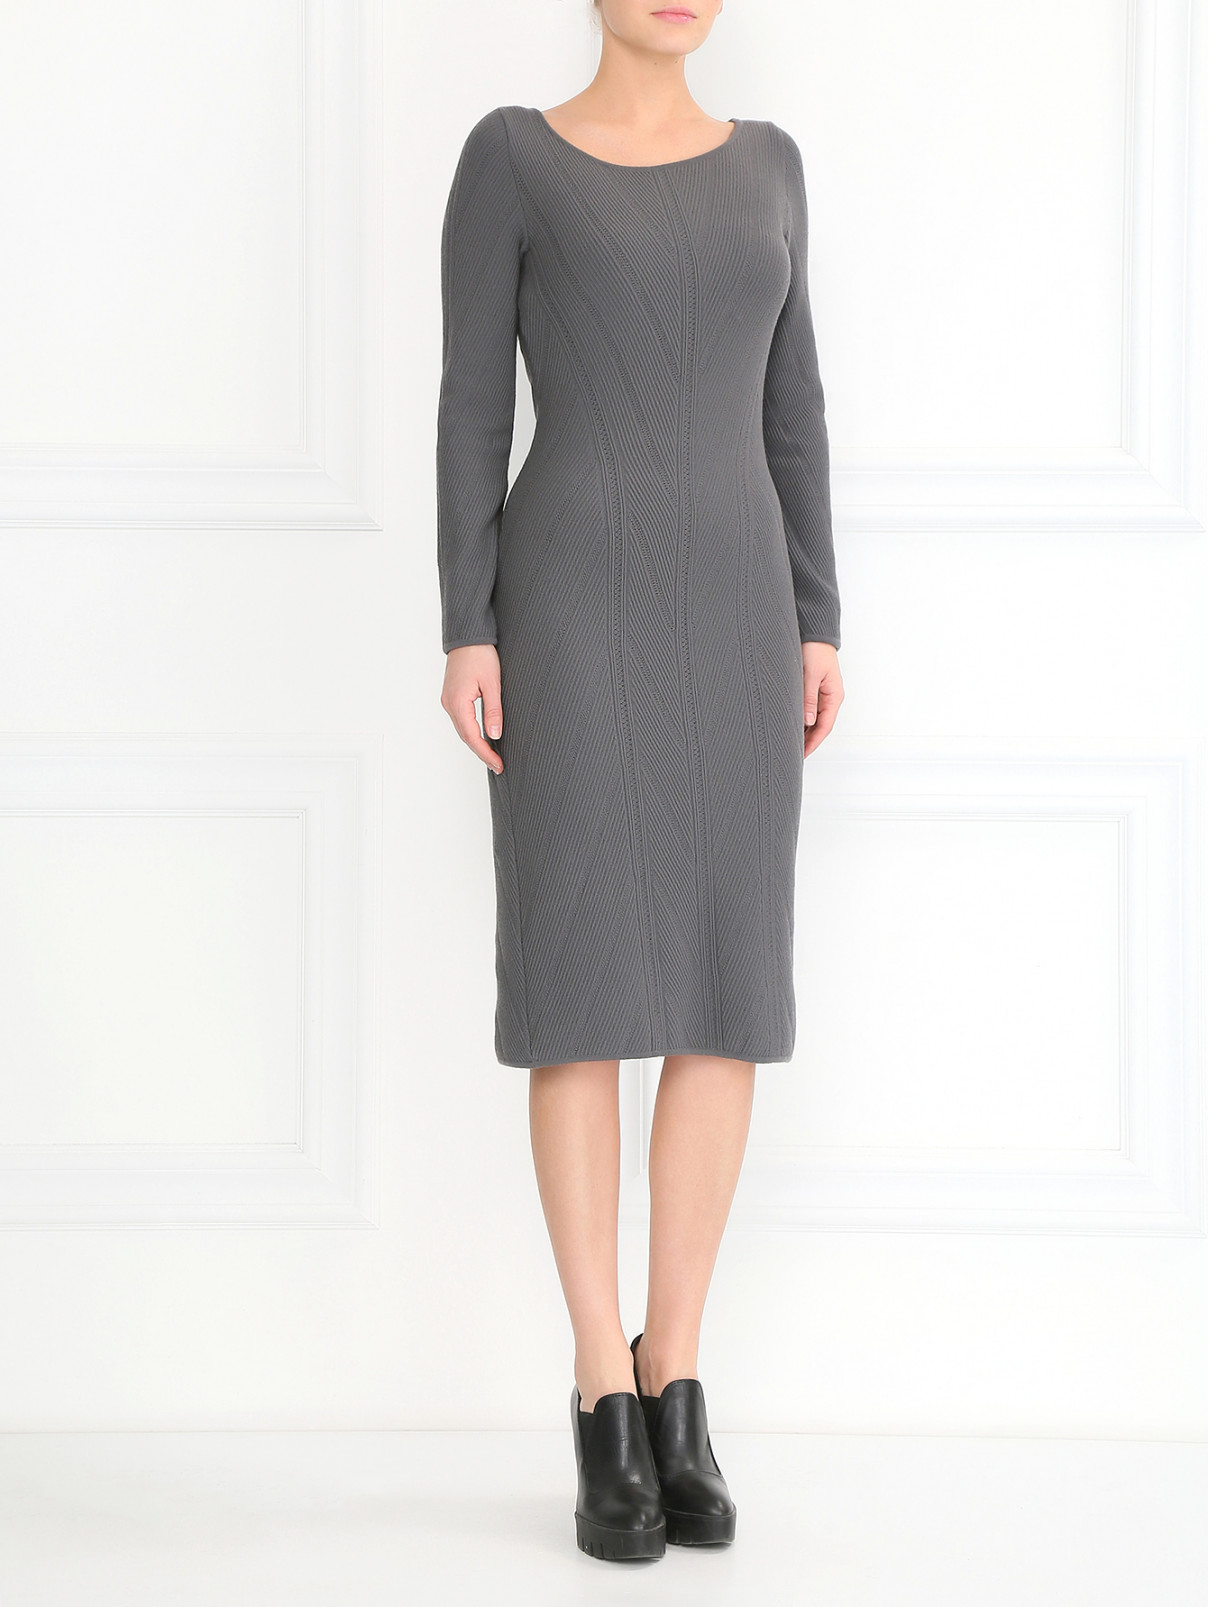 Трикотажное платье-футляр из шерсти фактурной вязки Alberta Ferretti  –  Модель Общий вид  – Цвет:  Серый